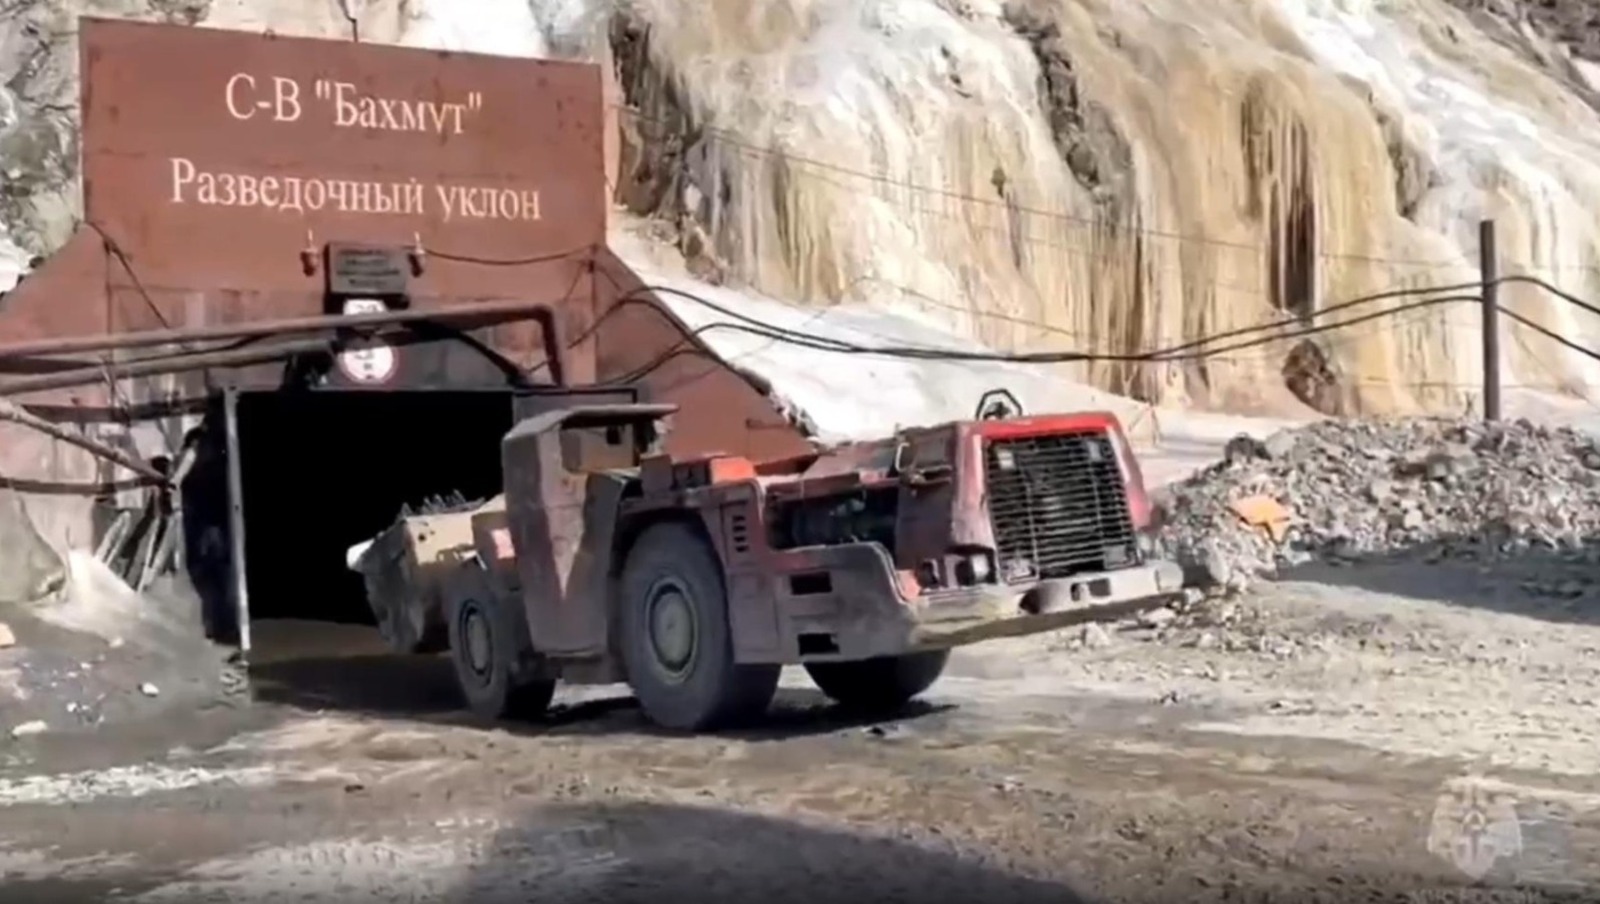 Рудник, где находятся вахтовики из Башкирии, с высокой вероятностью затоплен